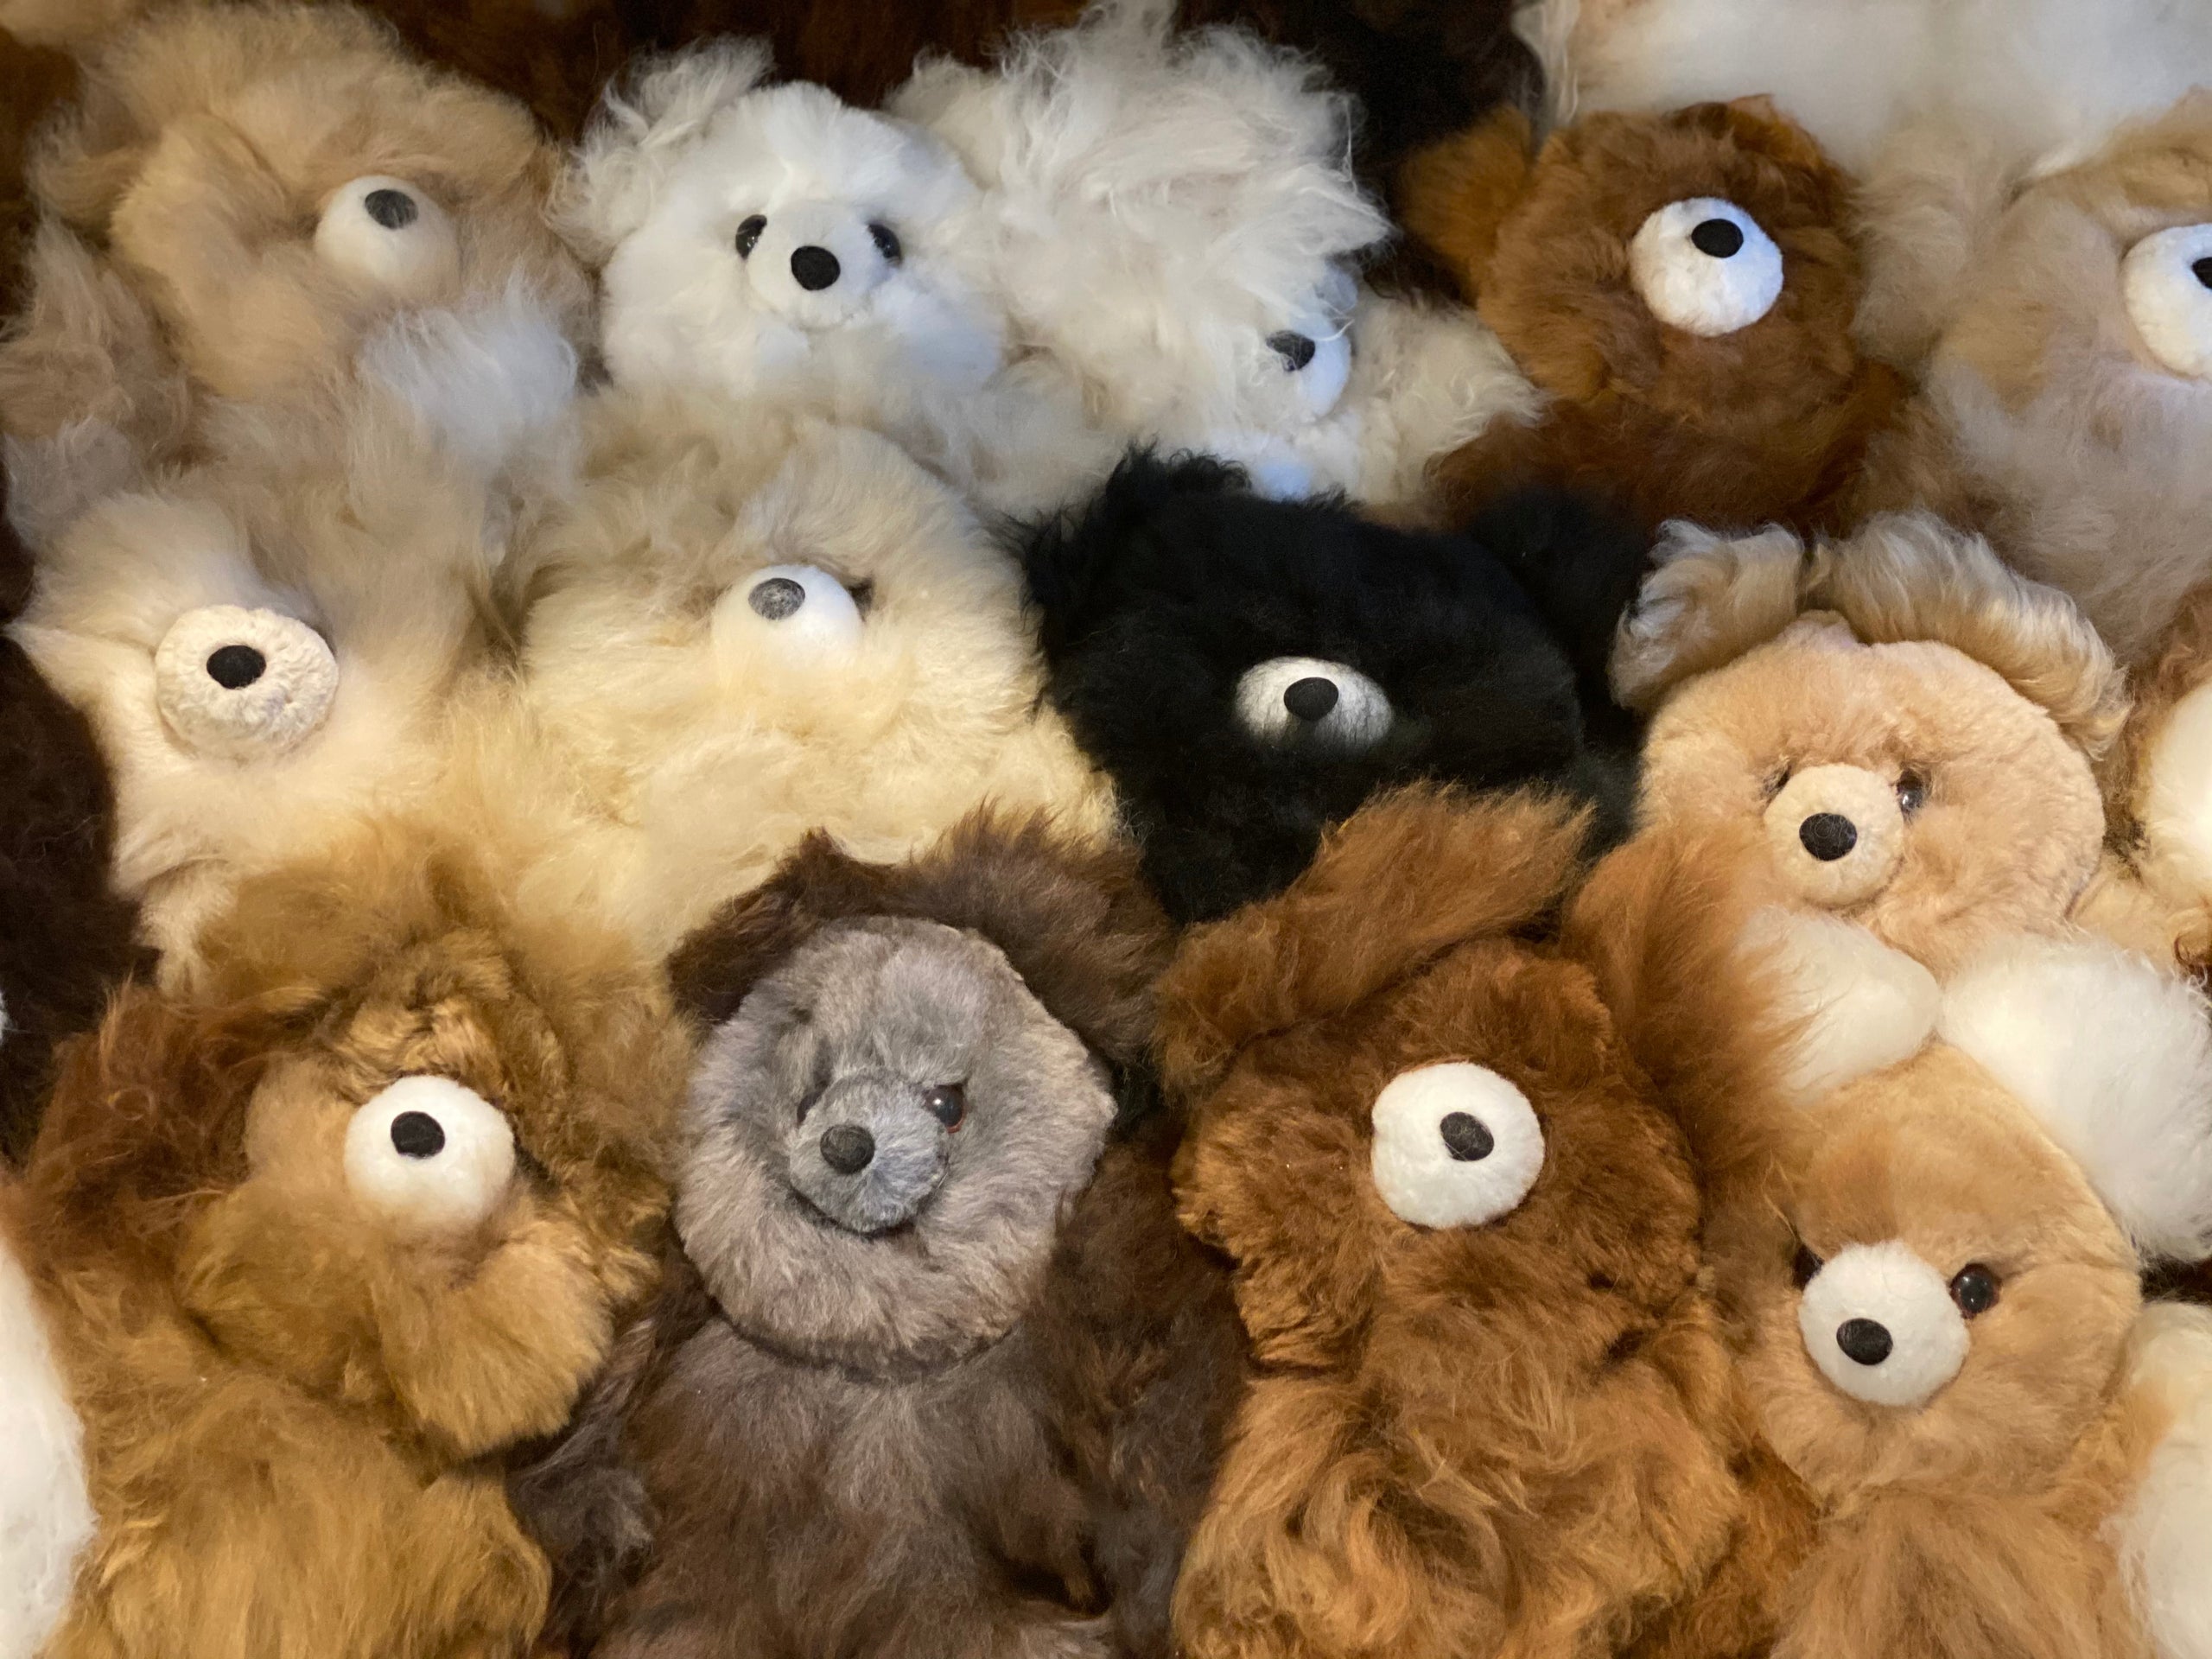 Alpaca Teddies made from 100% alpaca fiber in Peru